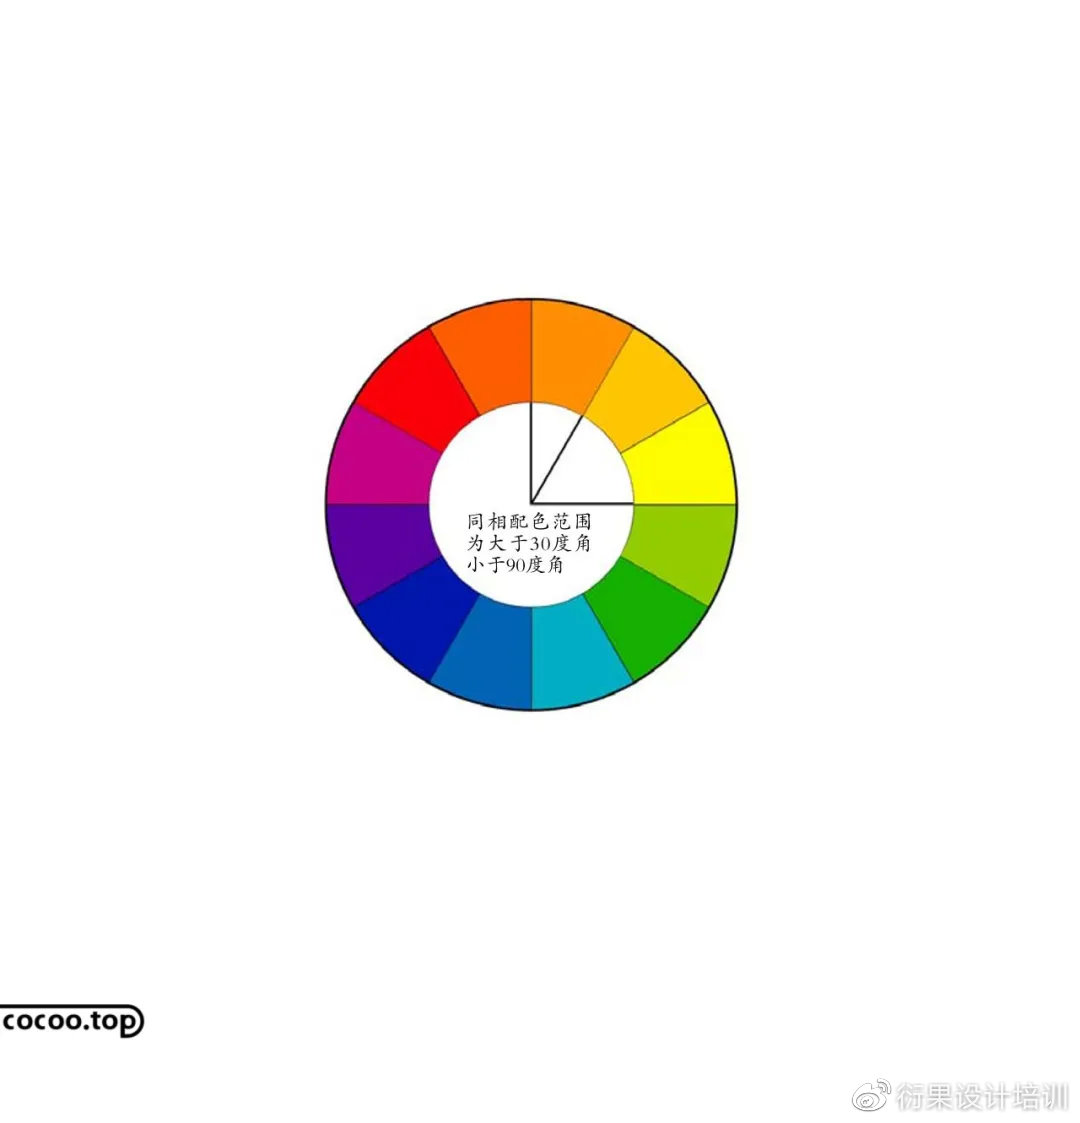 【设计干货】如何能够掌握色彩搭配的使用技巧